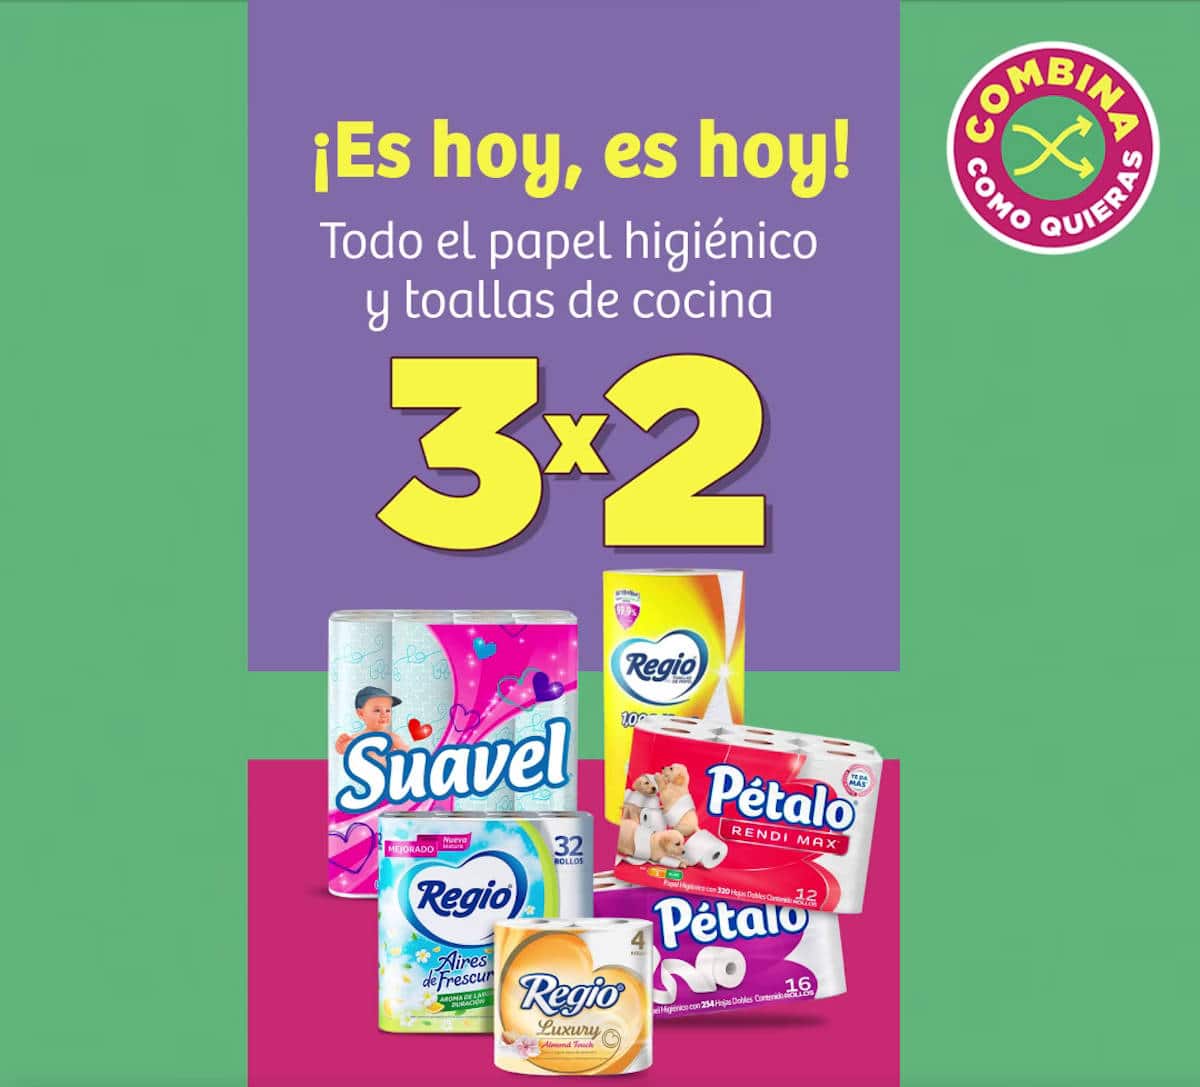 3x2 En papel higiénico en las OFERTAS de Soriana esta semana